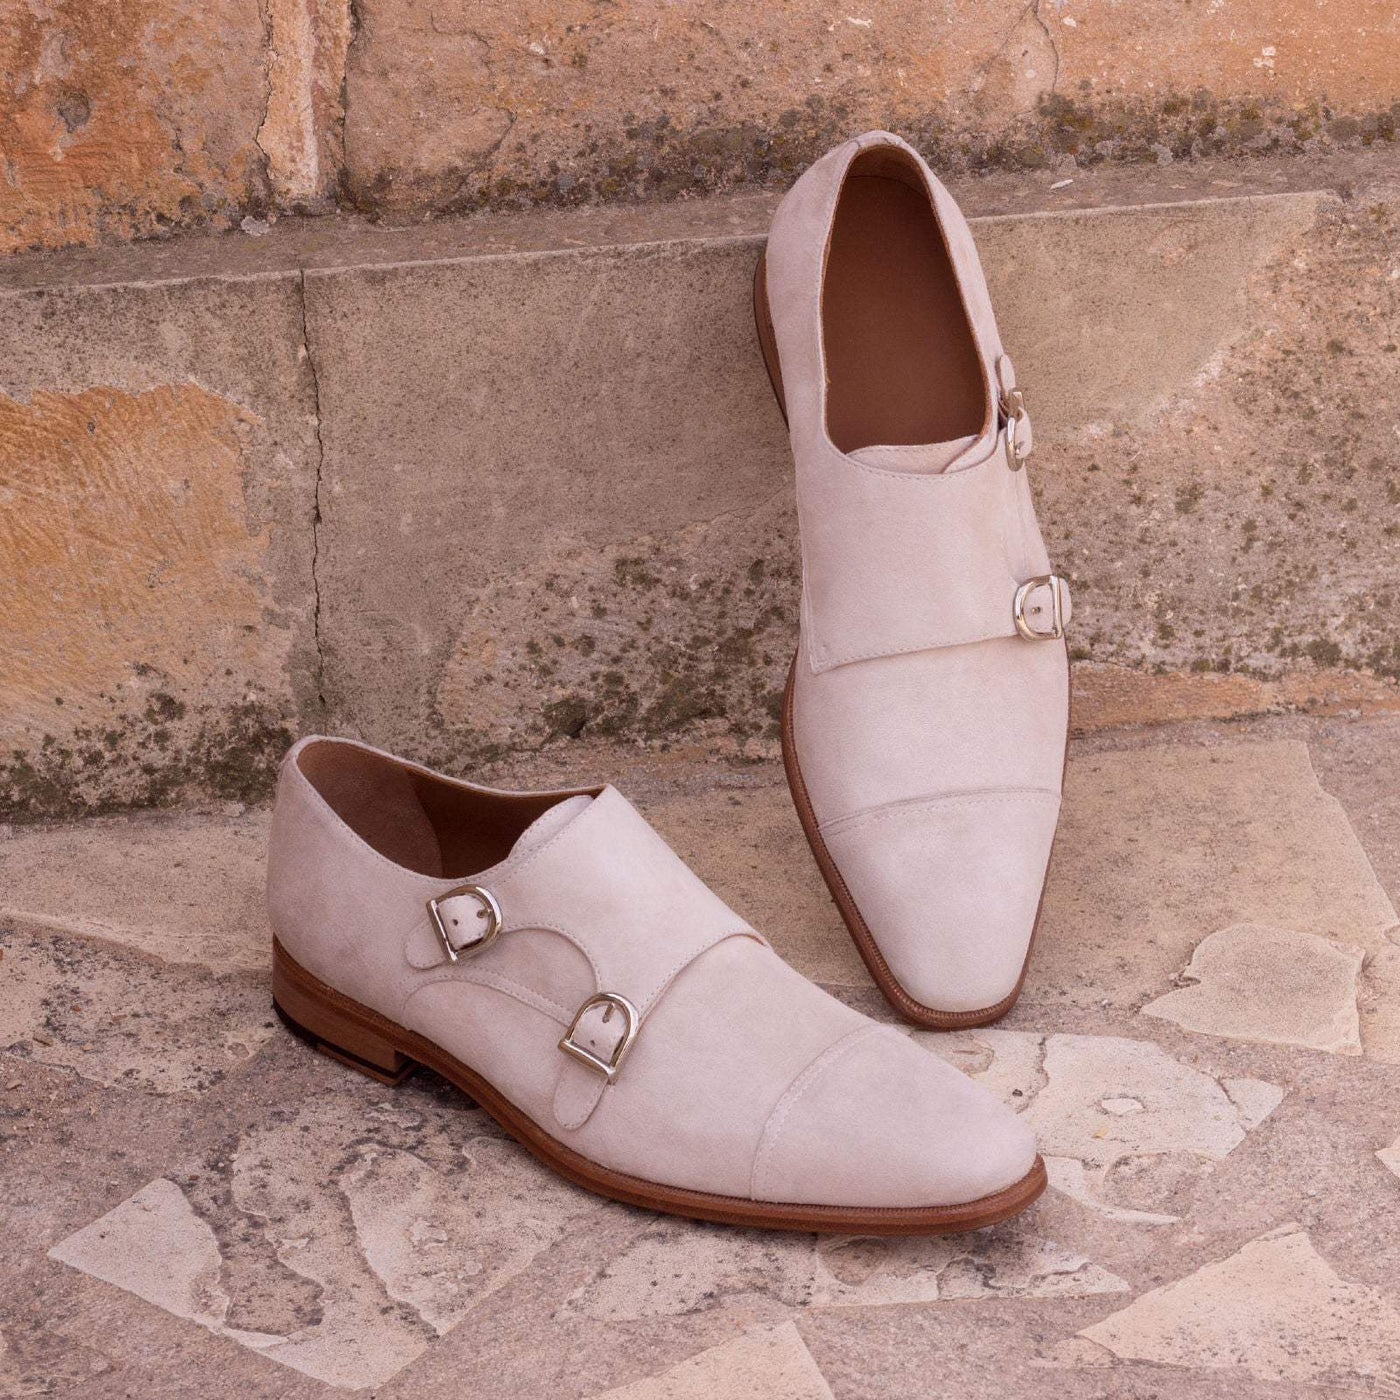 Men's Double Monk Shoes Leather White 2316 1- MERRIMIUM--GID-1363-2316